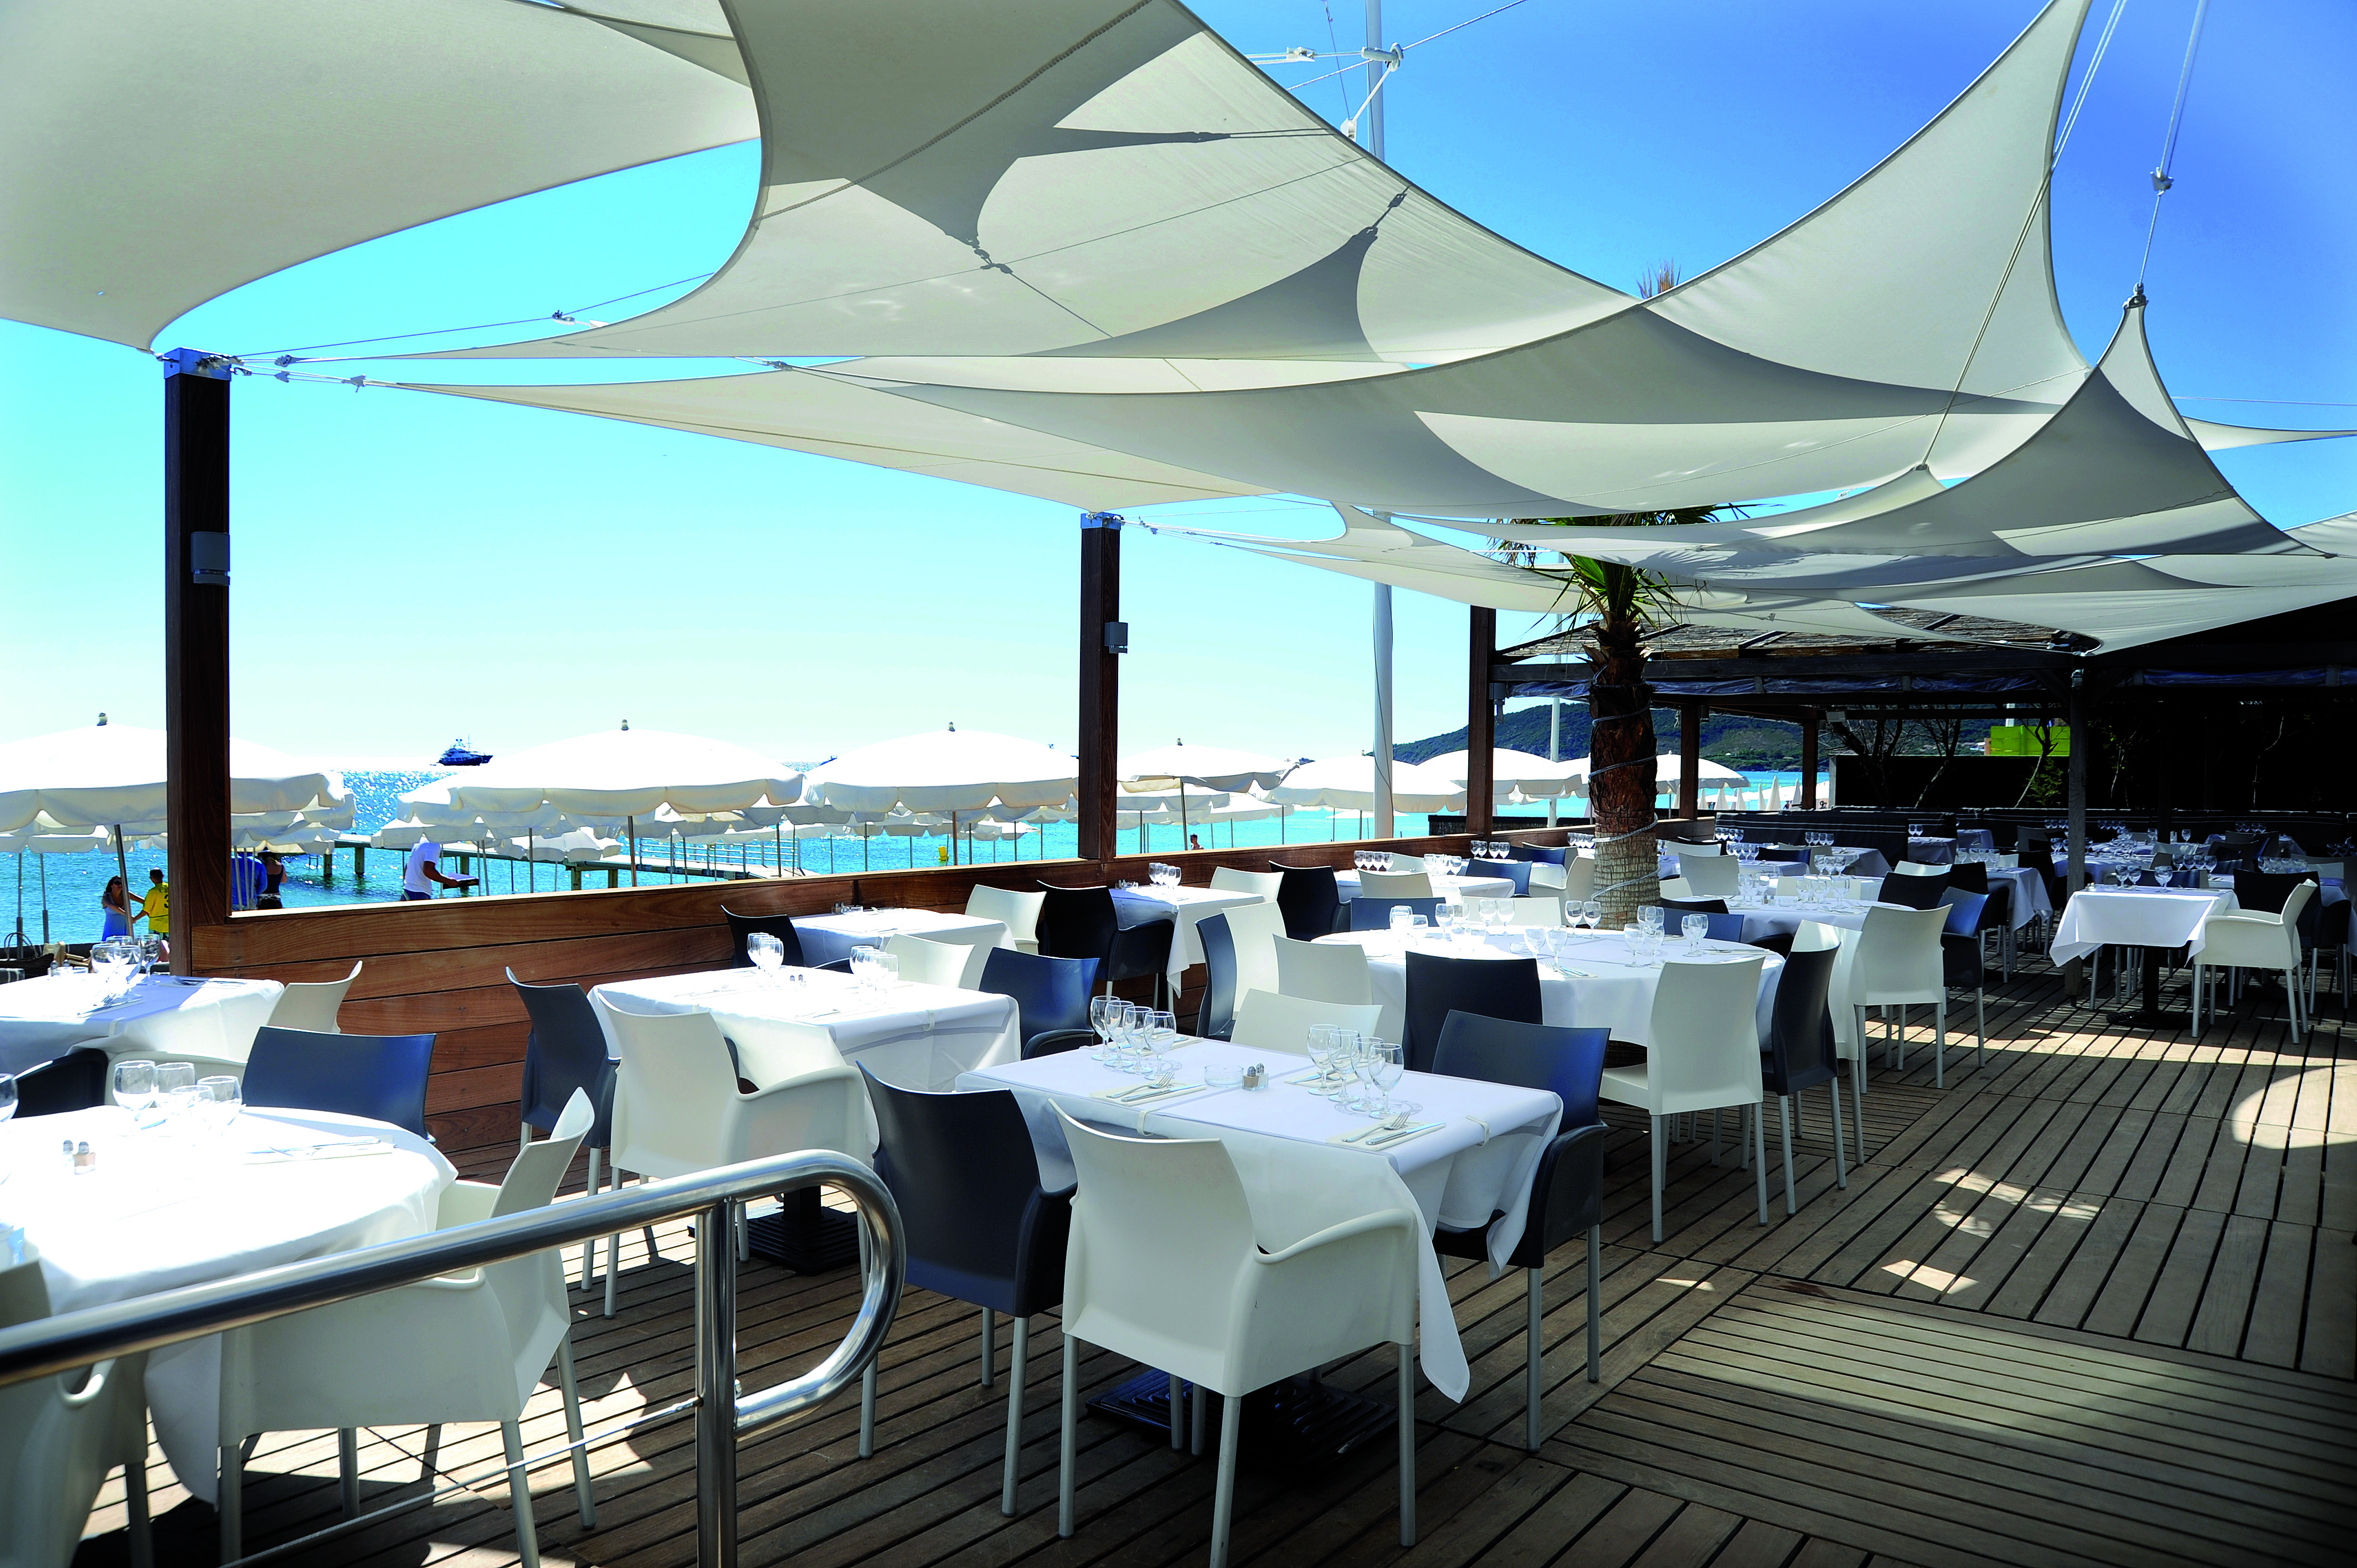 Voiles d'ombrages carrés et rectangulaire combinés pour ombragés une terrasse d'un restaurant au bord de mer